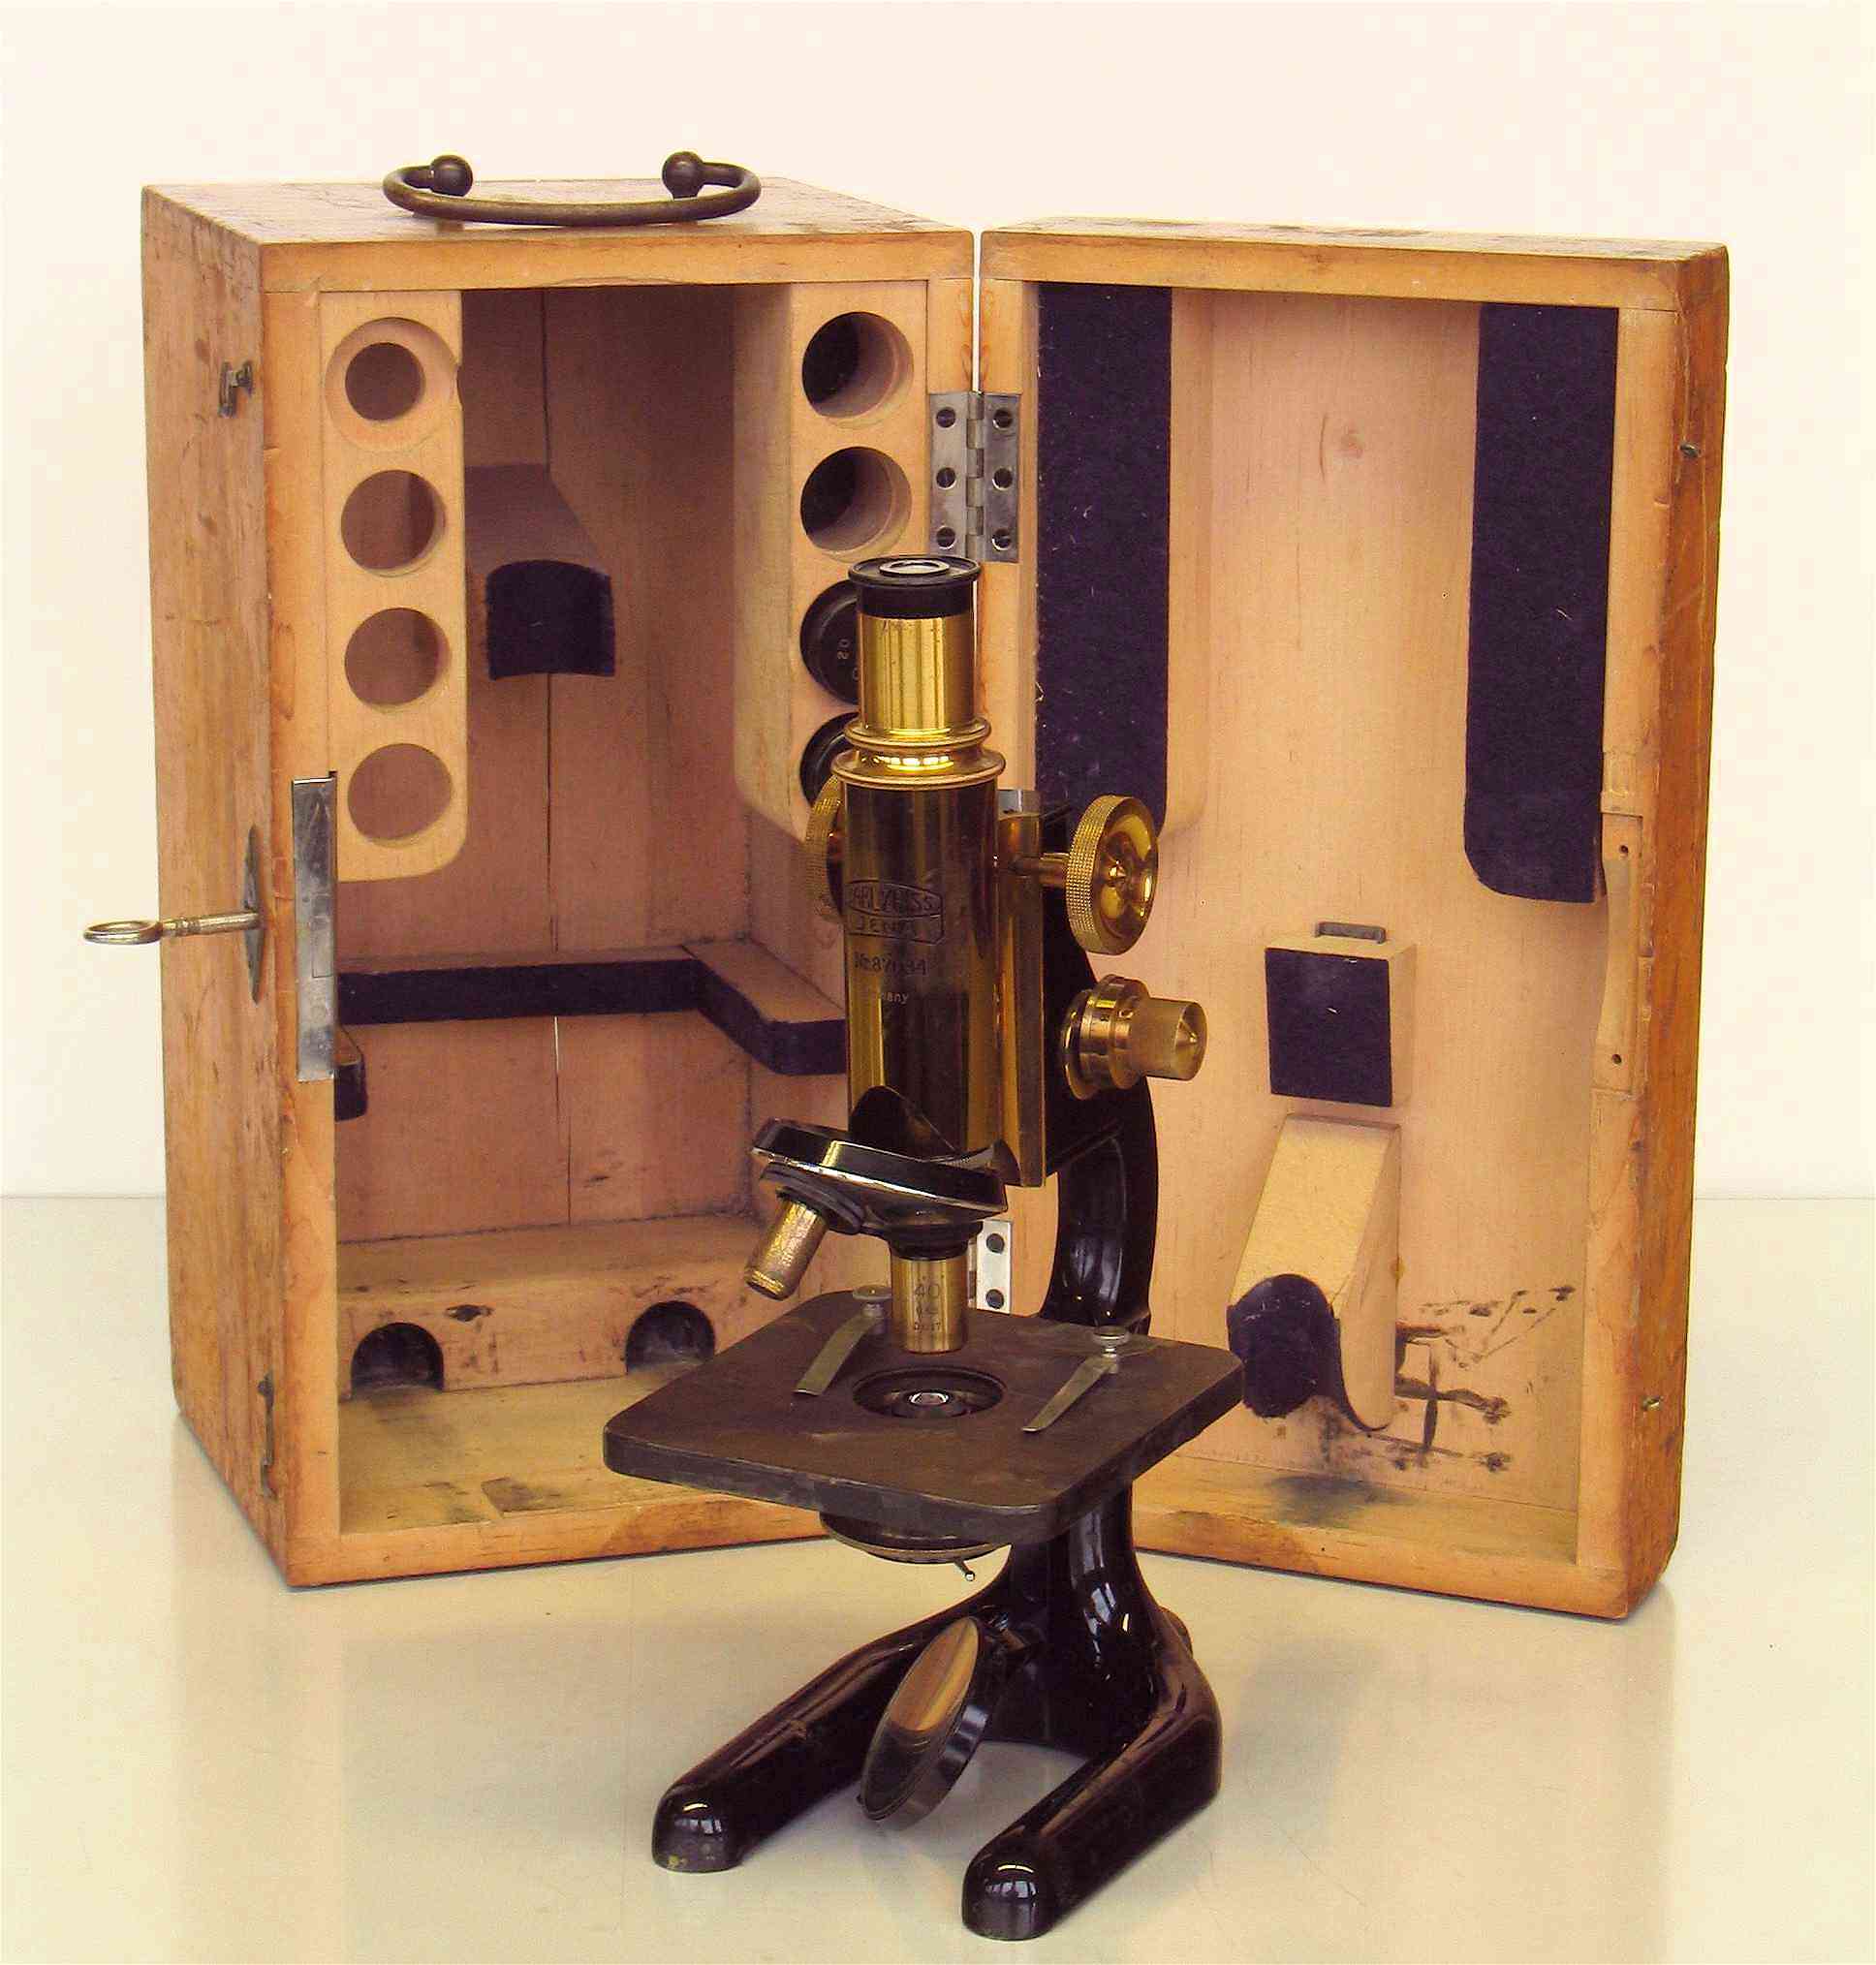 Microscope composé
